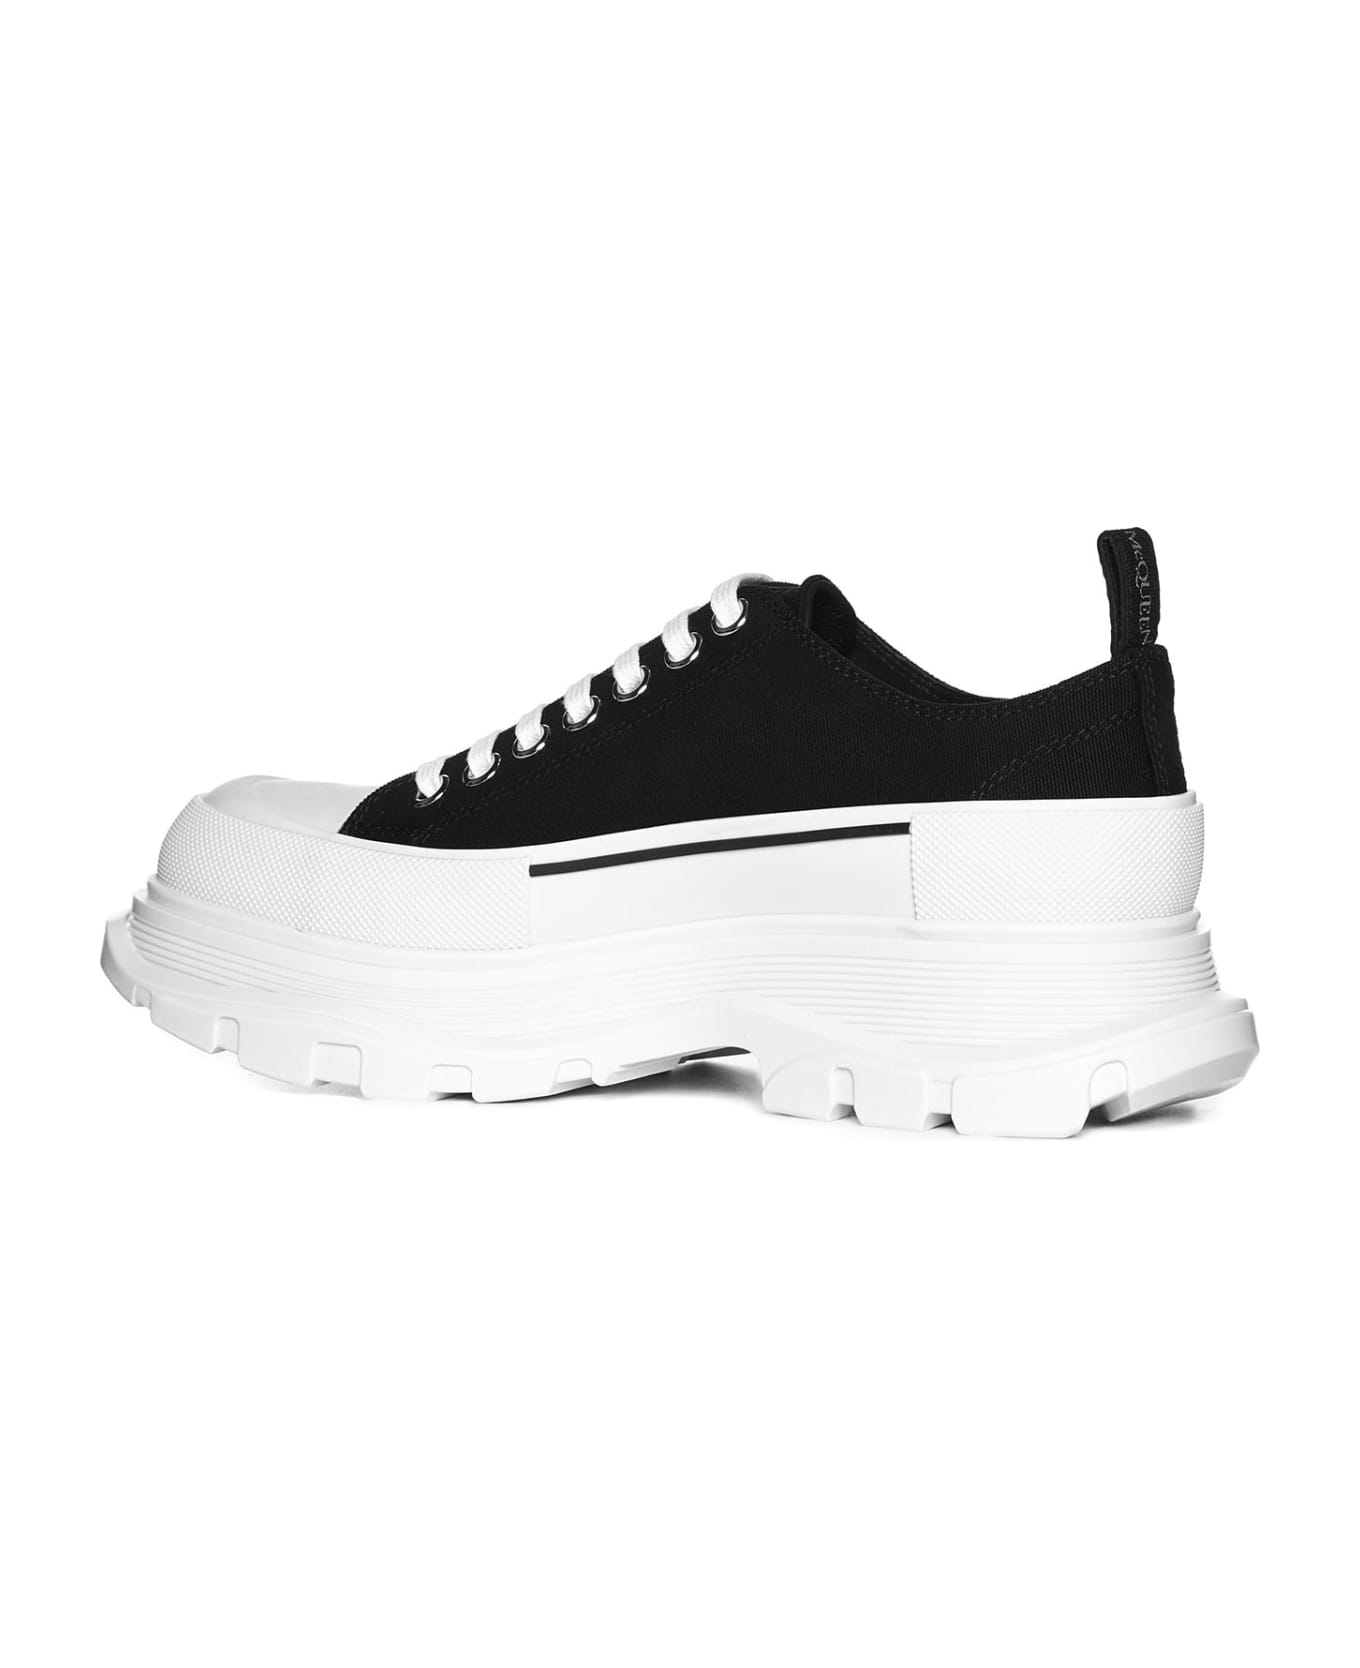 Alexander McQueen Sneaker Tread Slick - Black/white スニーカー